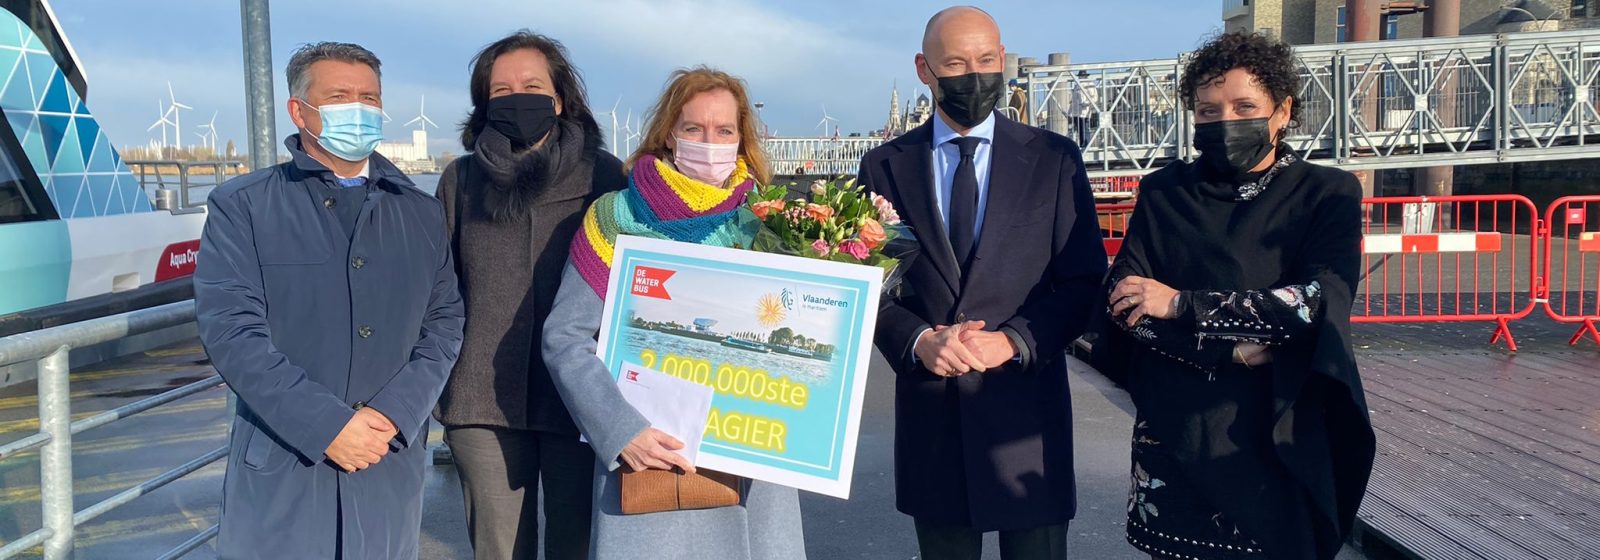 De twee miljoenste passagier van de Antwerpse Waterbus wordt in de bloemetjes gezet